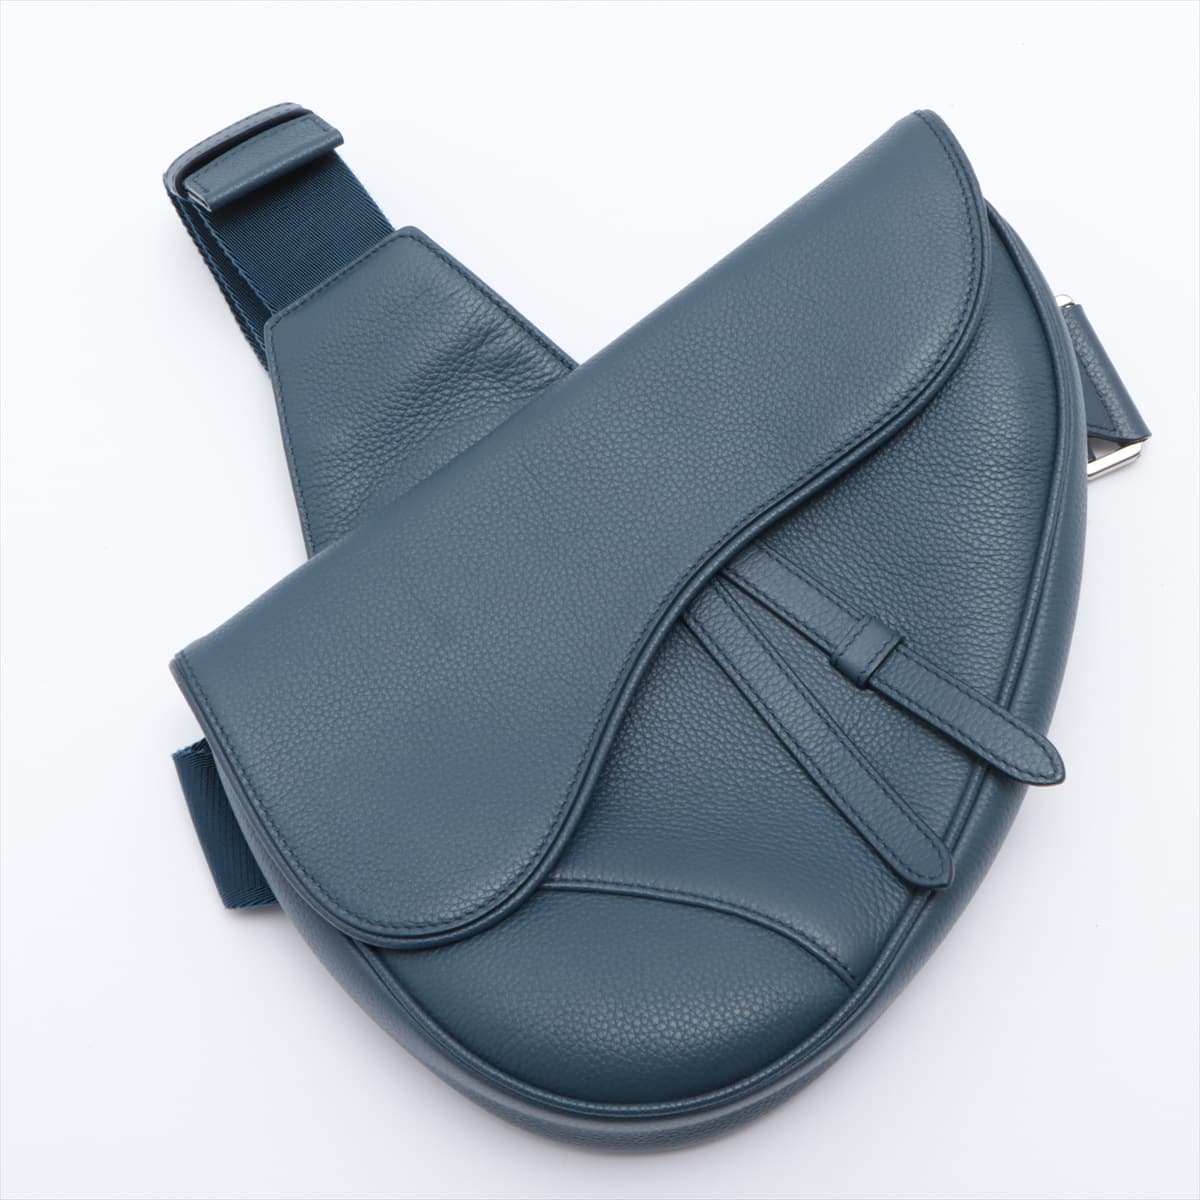 DIOR Saddle Bag Leather Sling backpack Navy blue